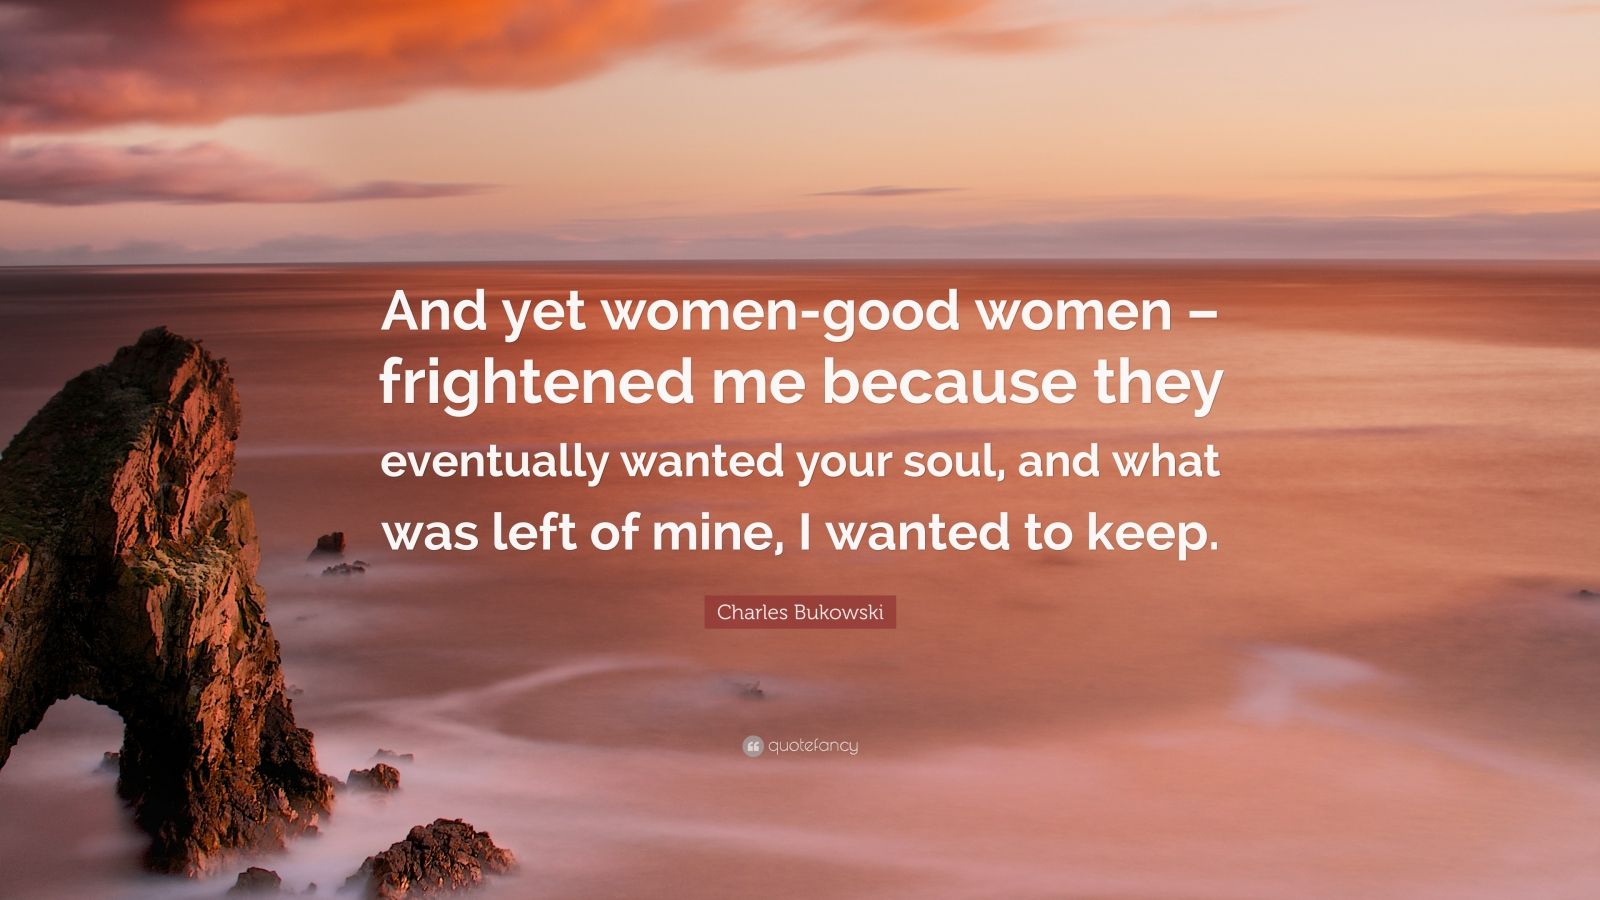 Charles Bukowski Quote: “And yet women-good women – frightened me ...